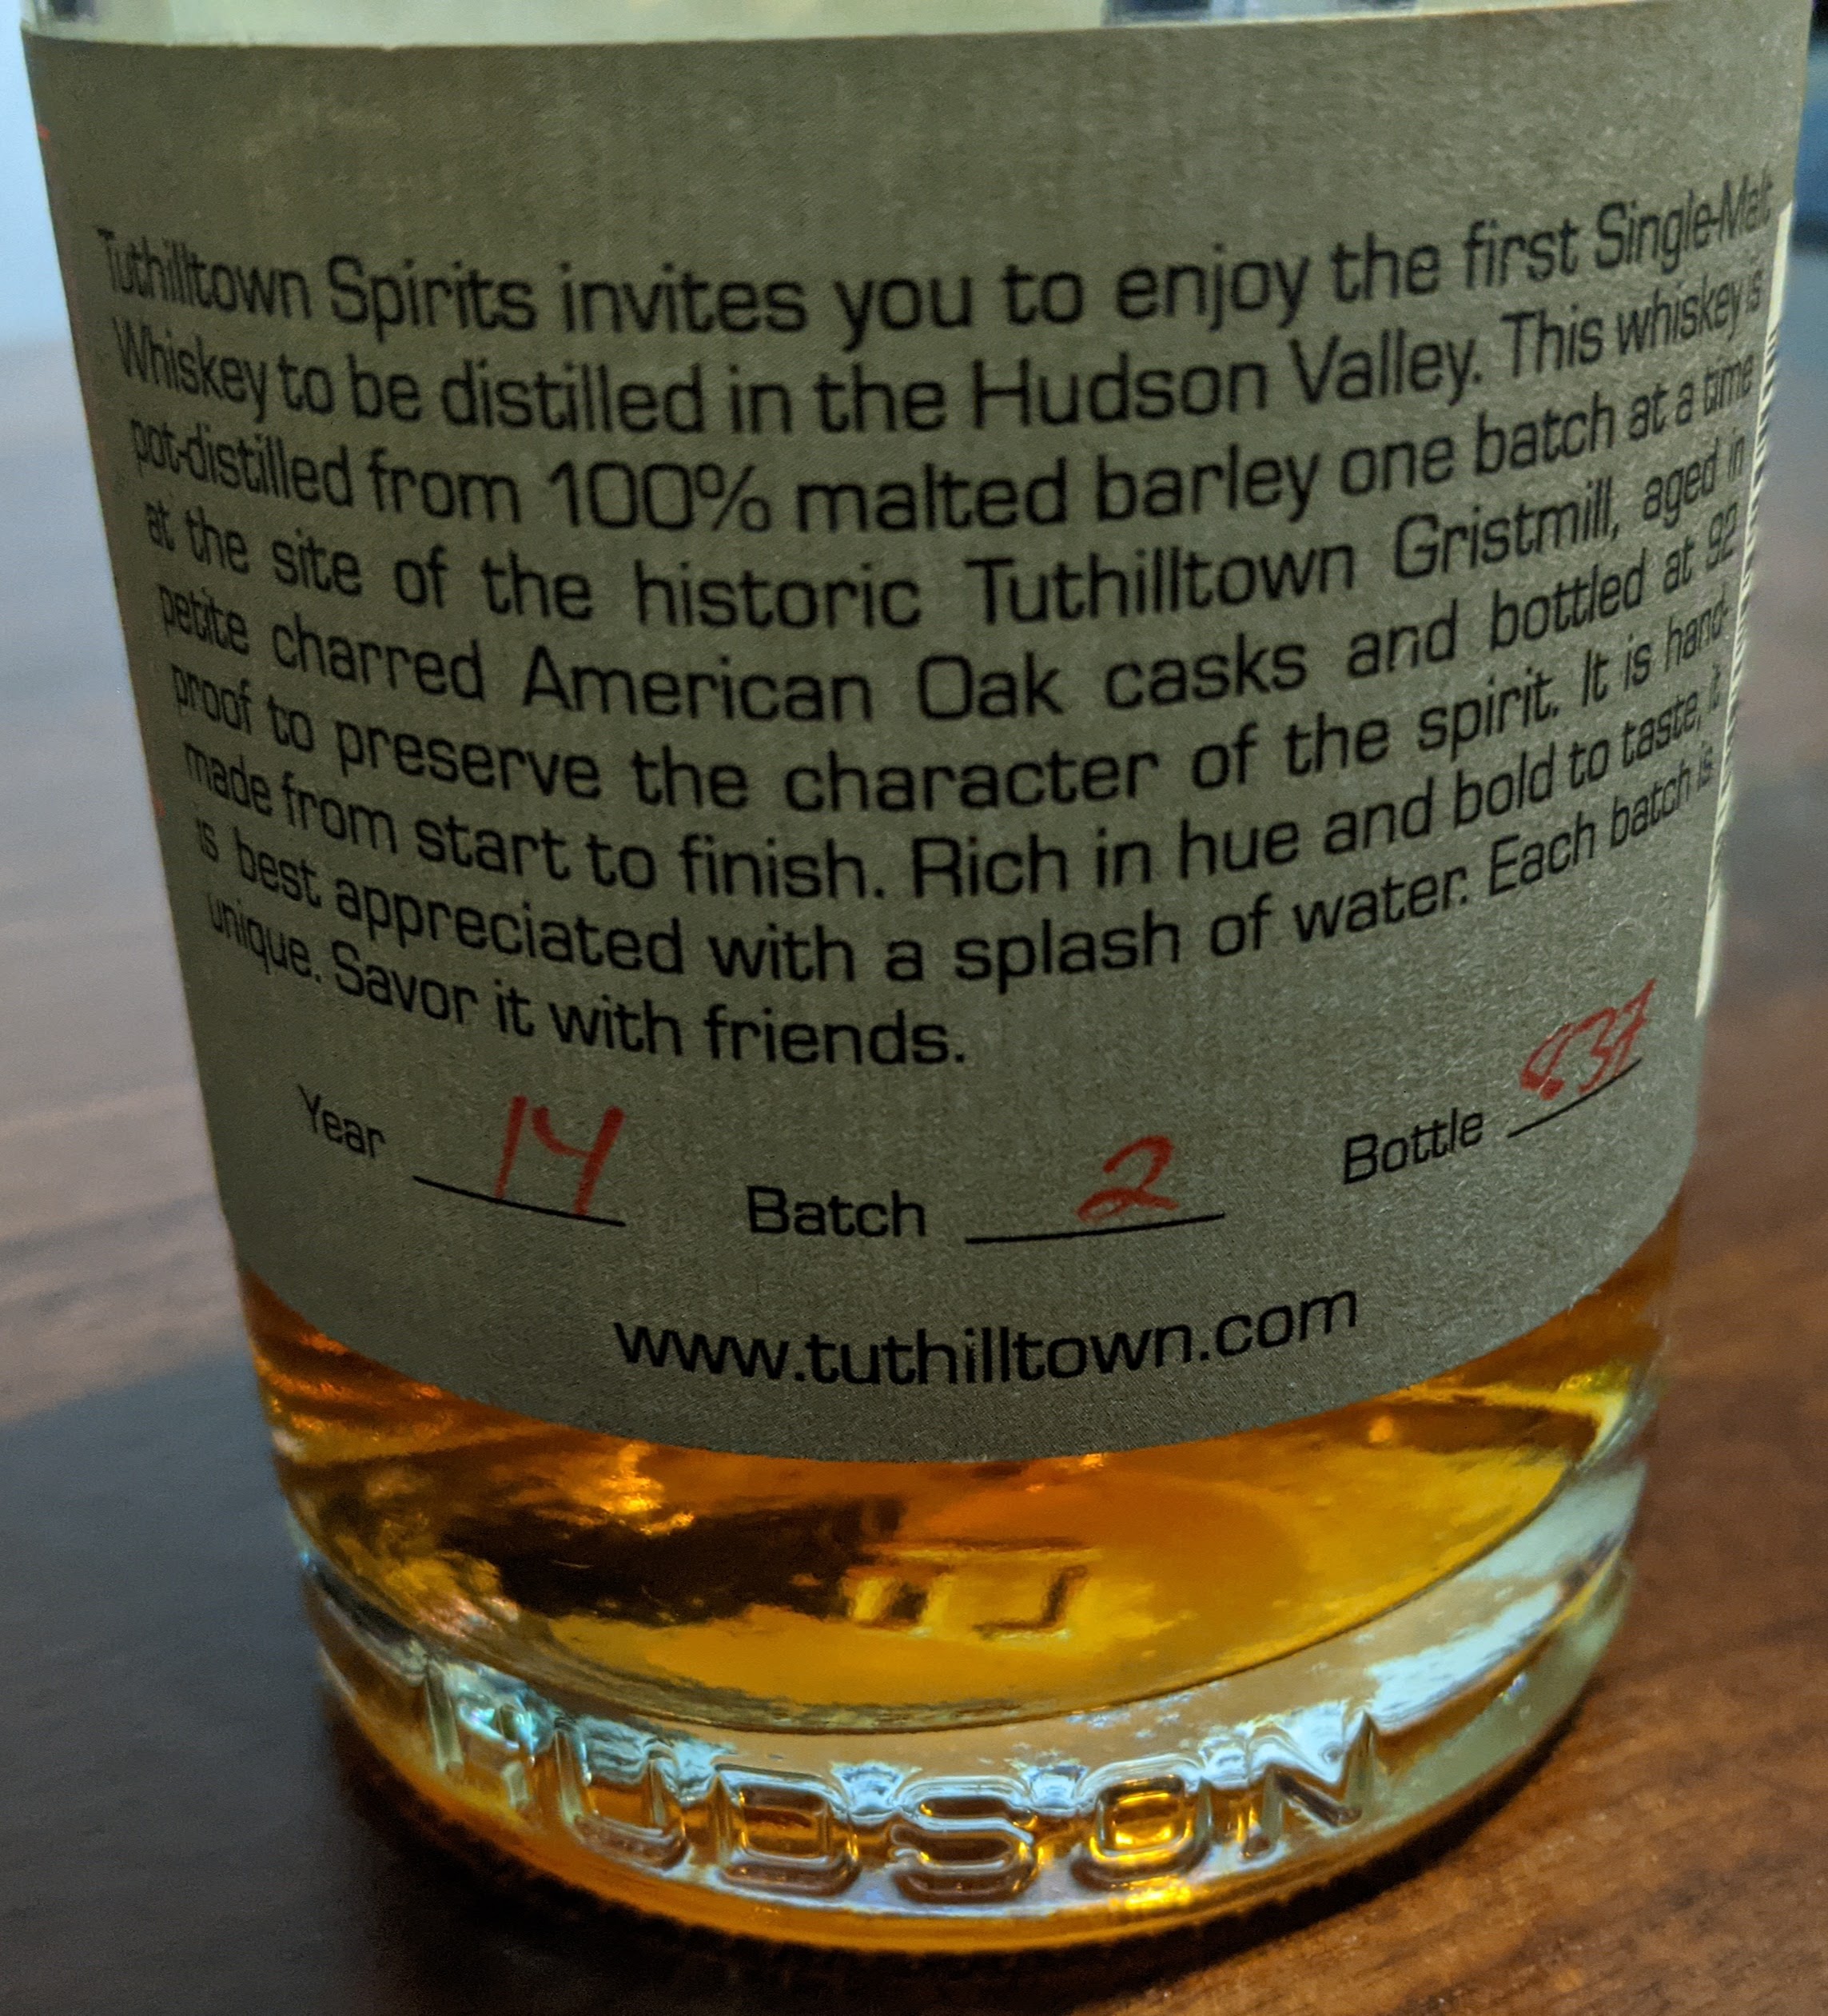 Image of back bottle label